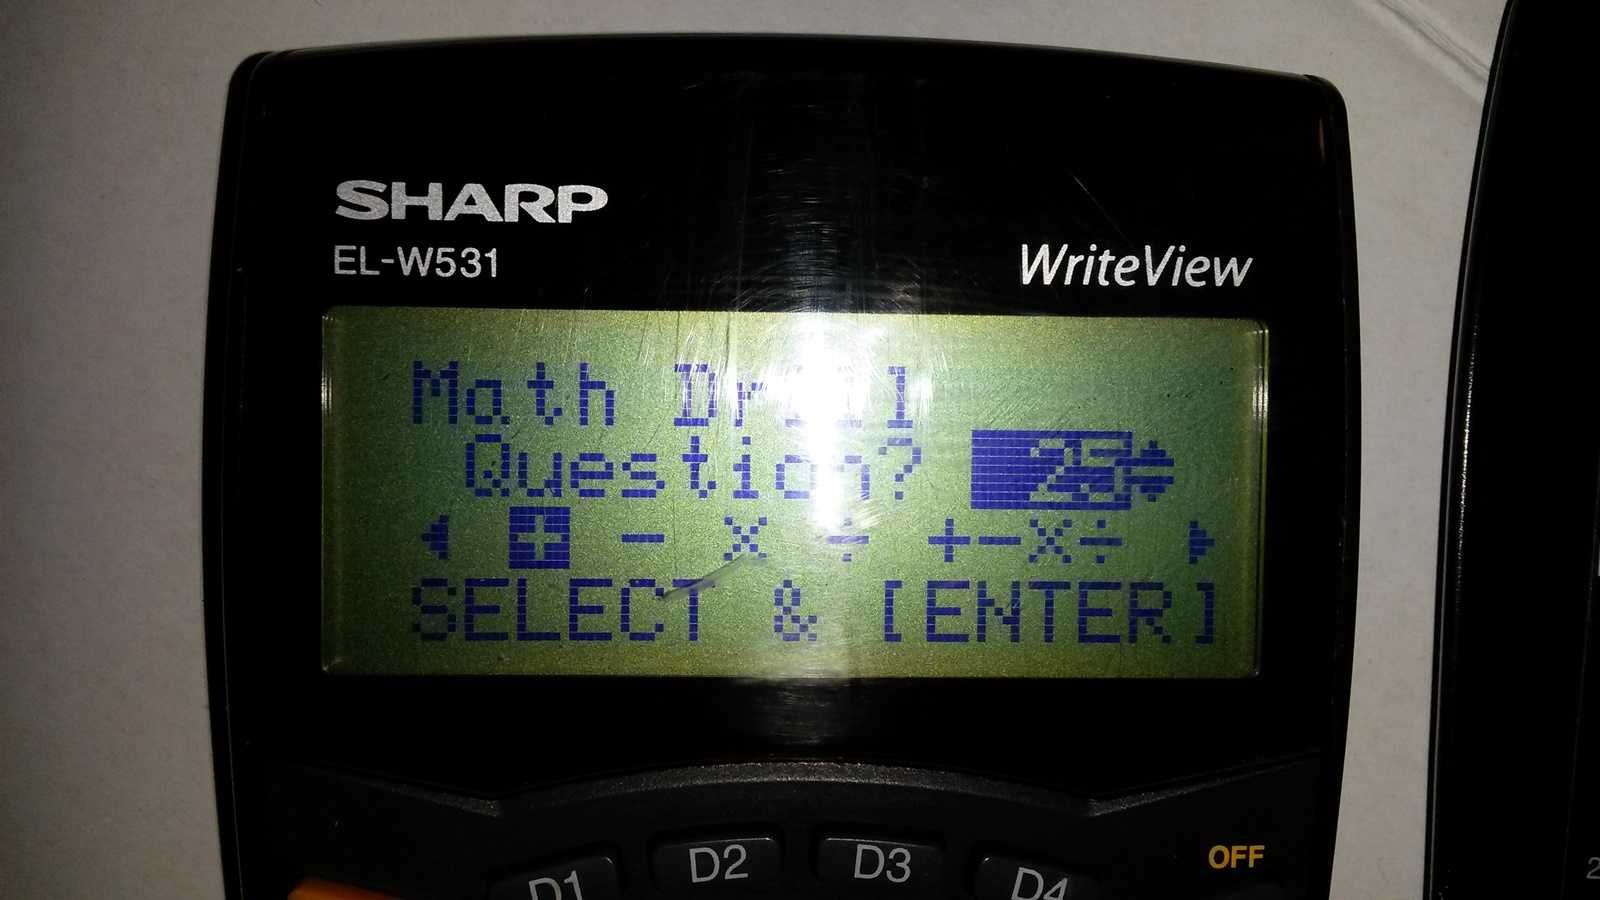 SHARP EL-W531 WriteView kalkulator naukowy